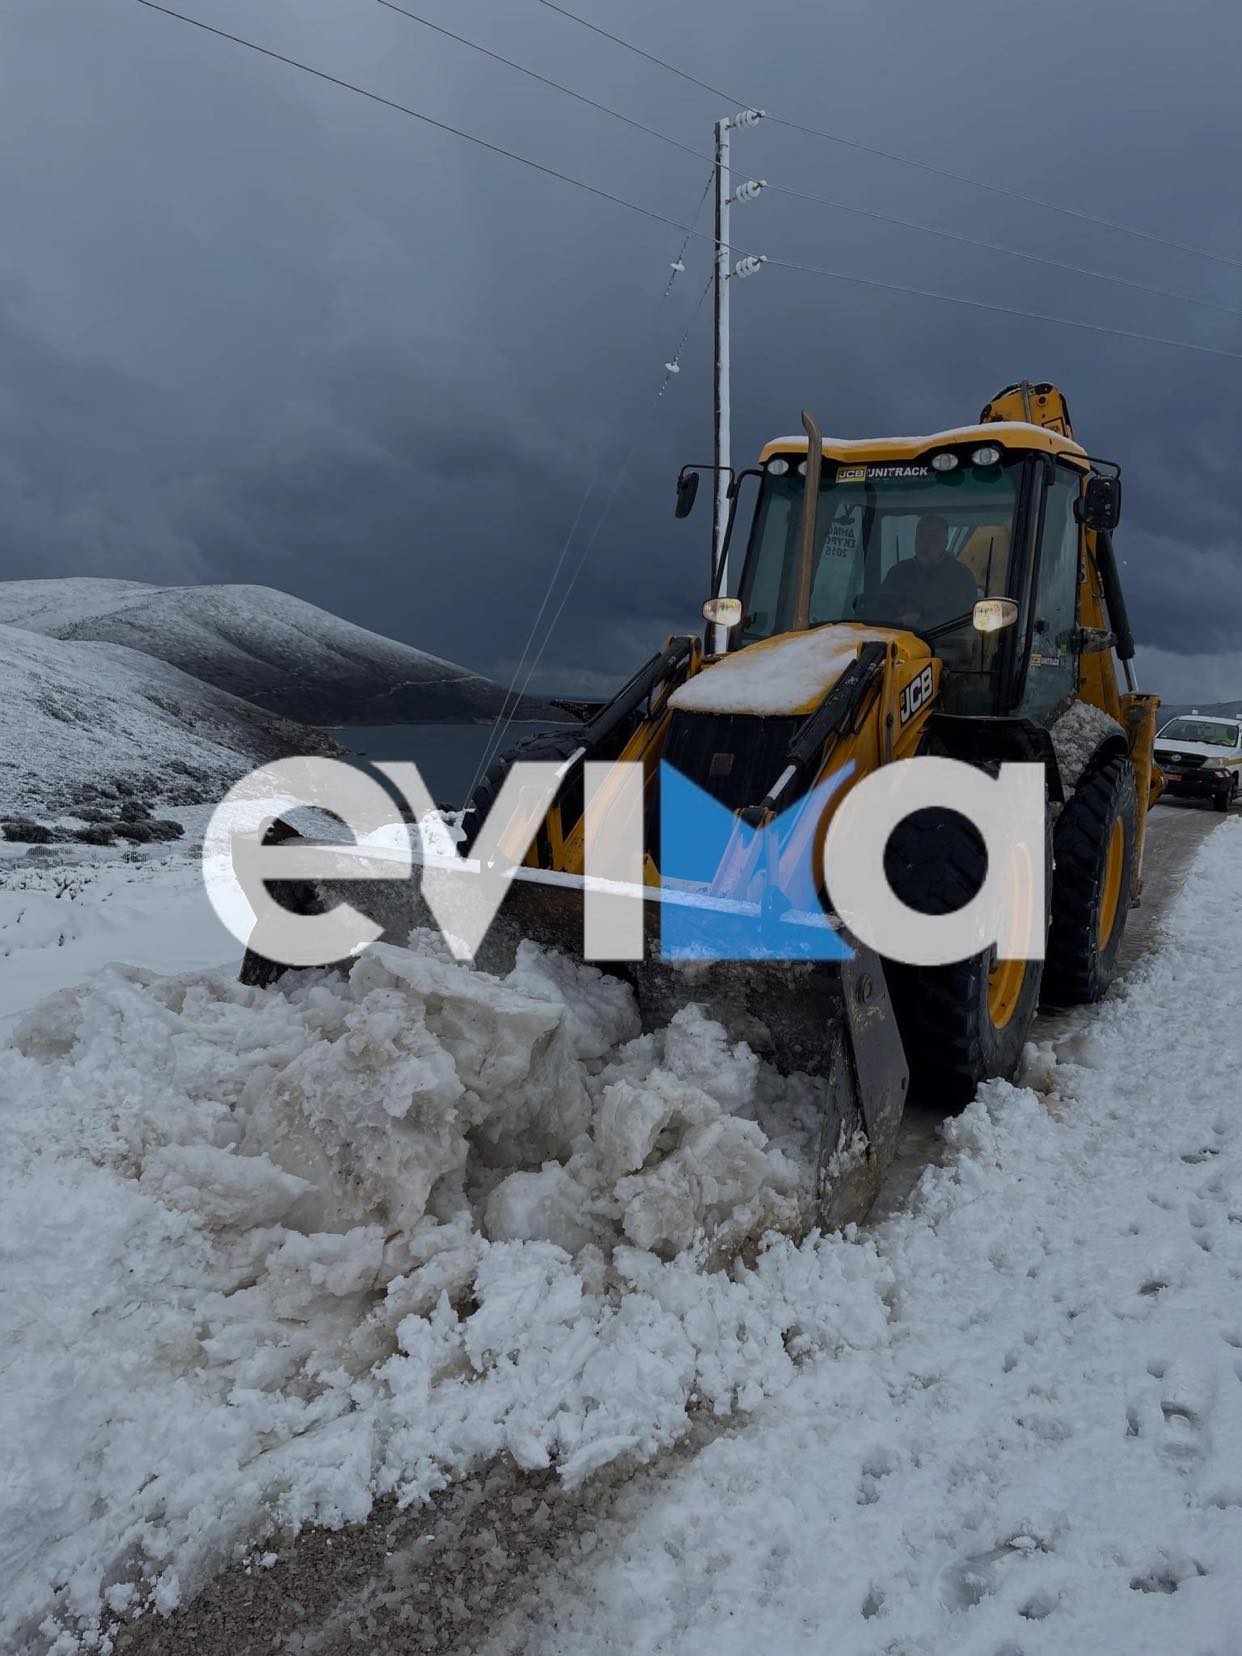 Δήμαρχος Σκύρου στο evima.gr: «Είμαστε πάνω στα μηχανήματα και κρατάμε τους δρόμους ανοιχτούς, αναμένουμε πολύ χιόνι»